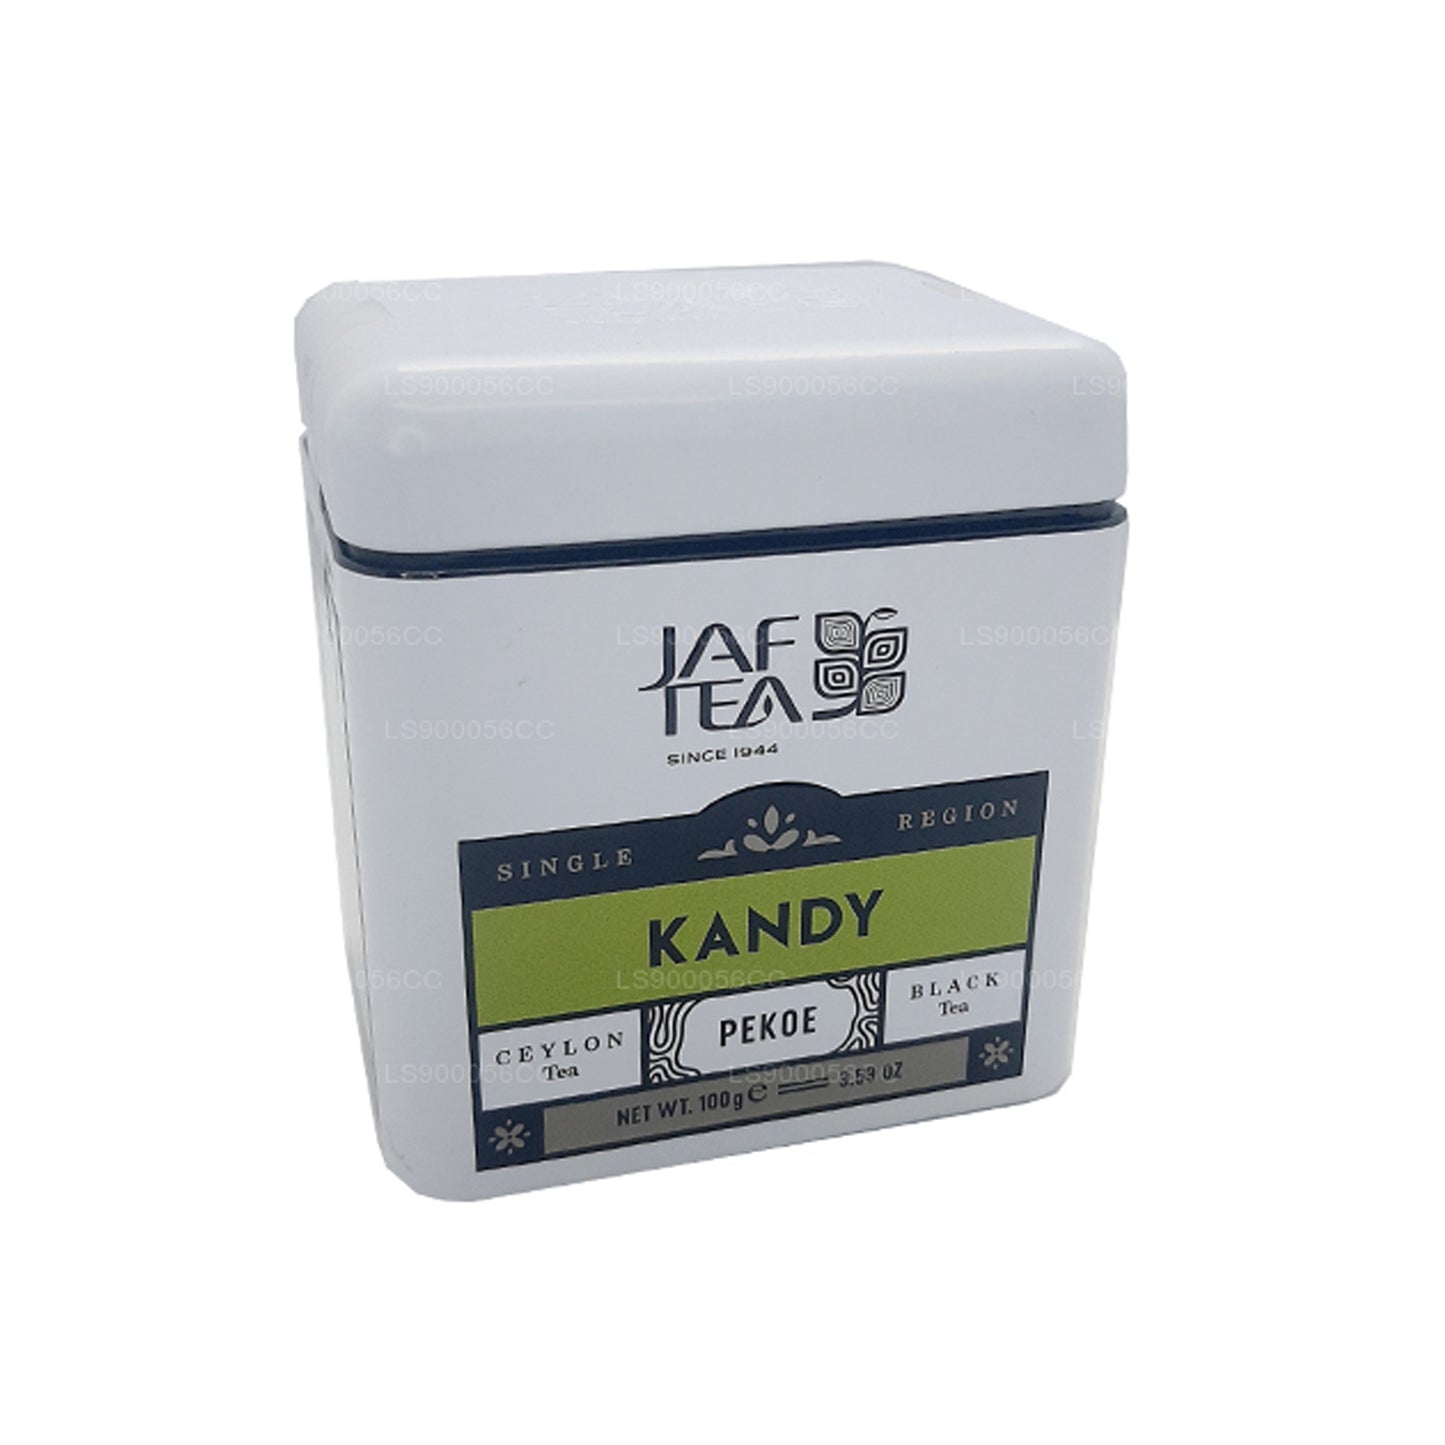 Lata Kandy PEKOE de la colección Jaf Tea Single Region (100 g)